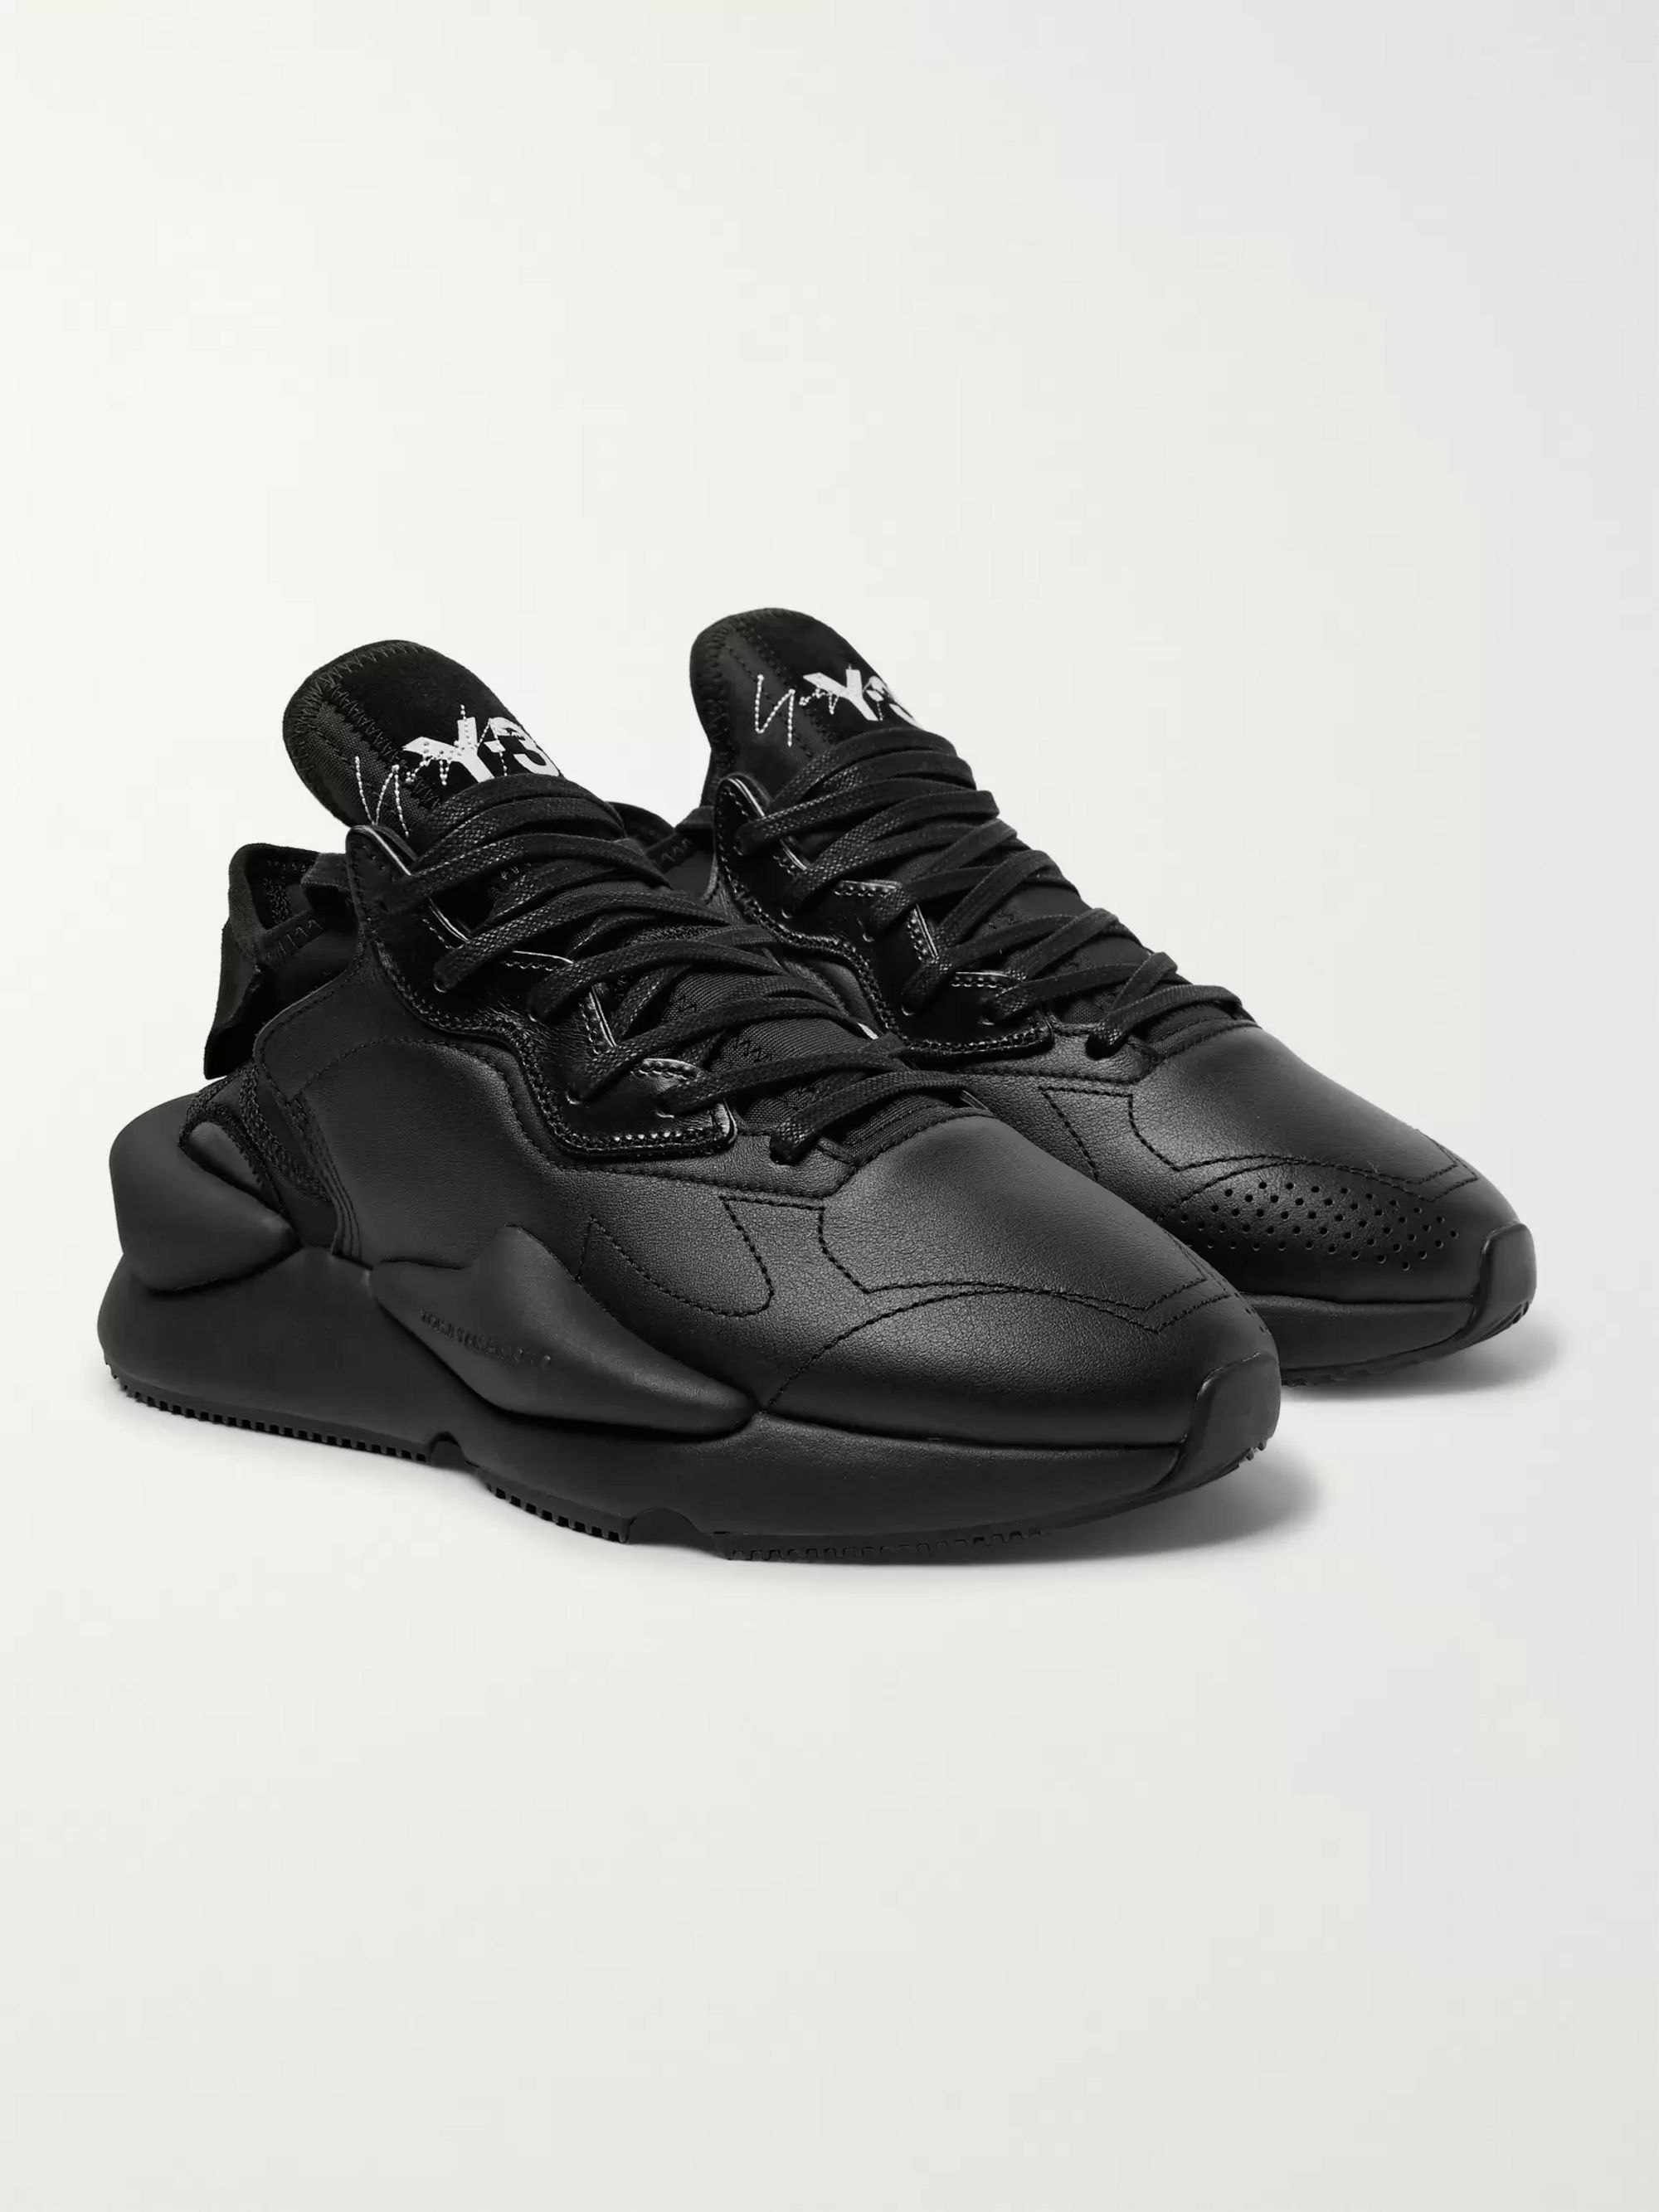 Y 3 мужской. Y-3 Kaiwa Black. Adidas y-3 Kaiwa черные. Yohji y3 Sneakers. Y-3 adidas Yohji Yamamoto.